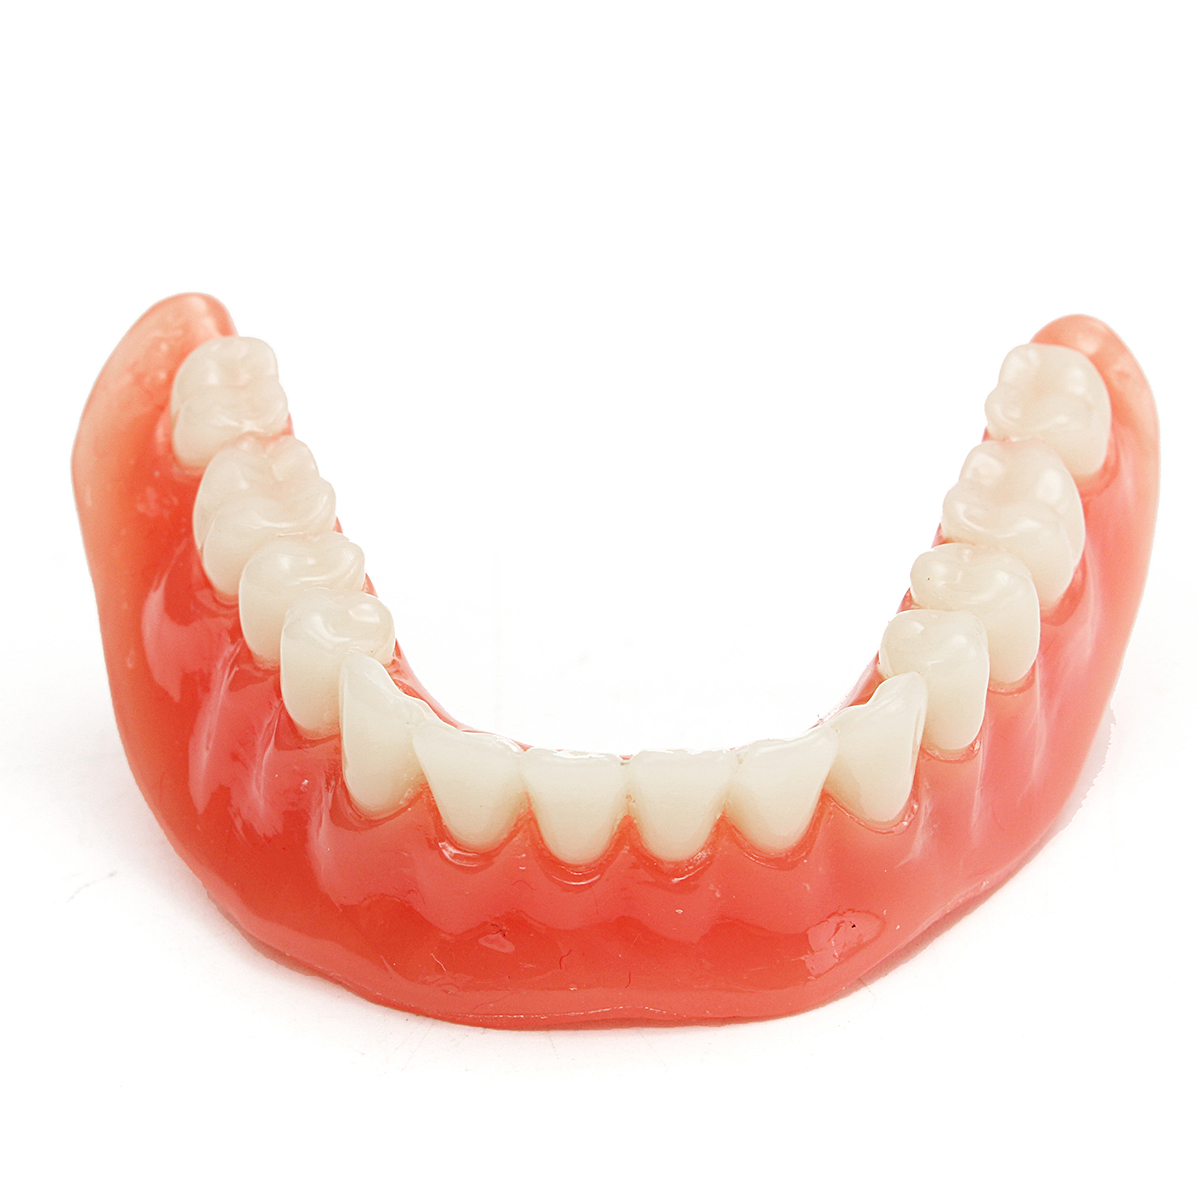 

Прецизионные имплантаты реставрация зубов демонстрационная модель зубной протез Emulational